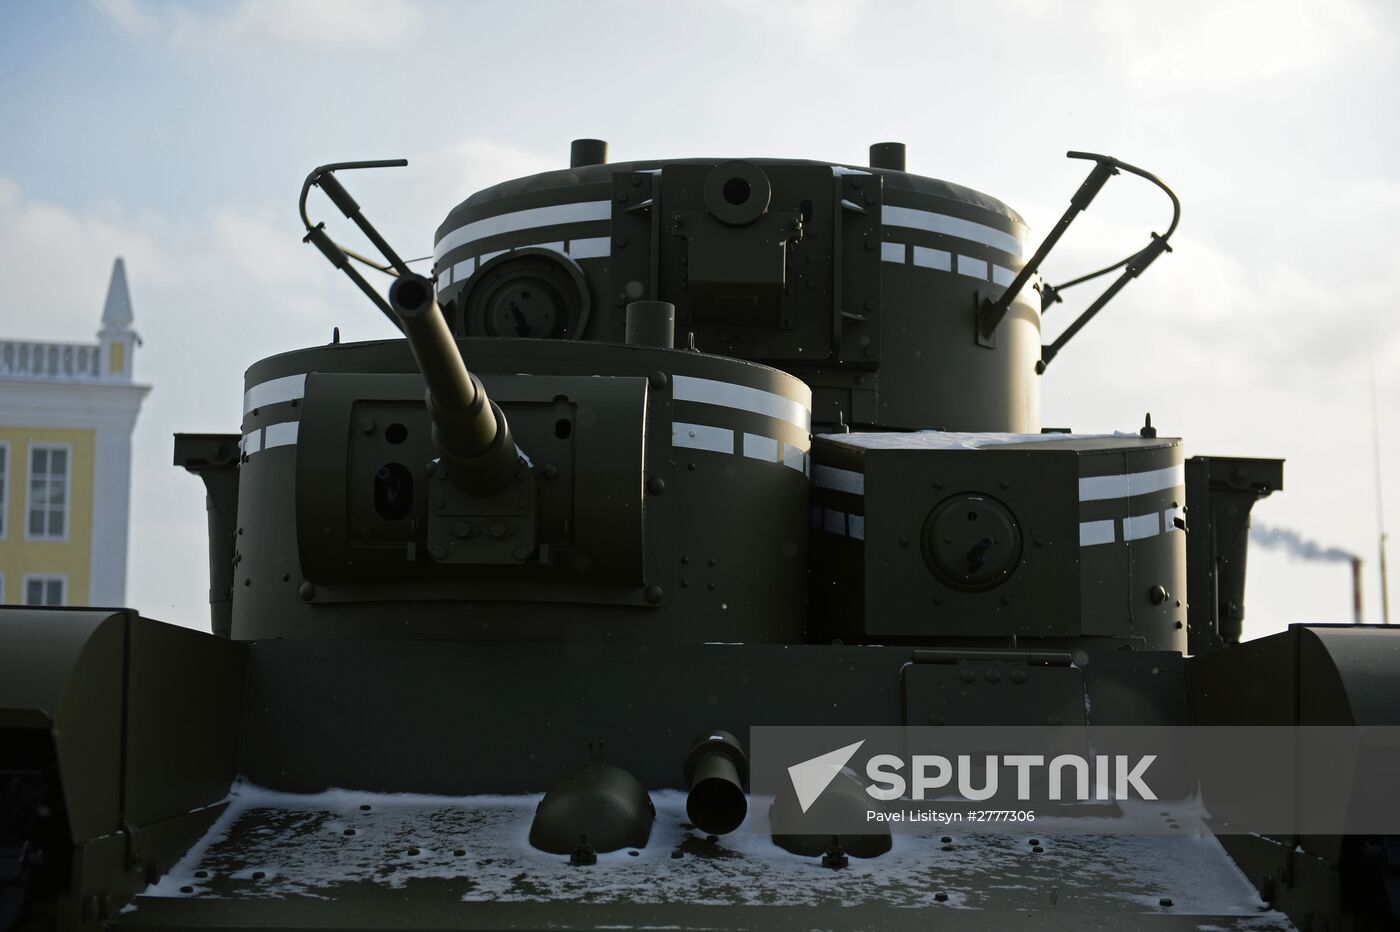 Sverdlovsk Region engineers recreate T-35 tank using Soviet drawings